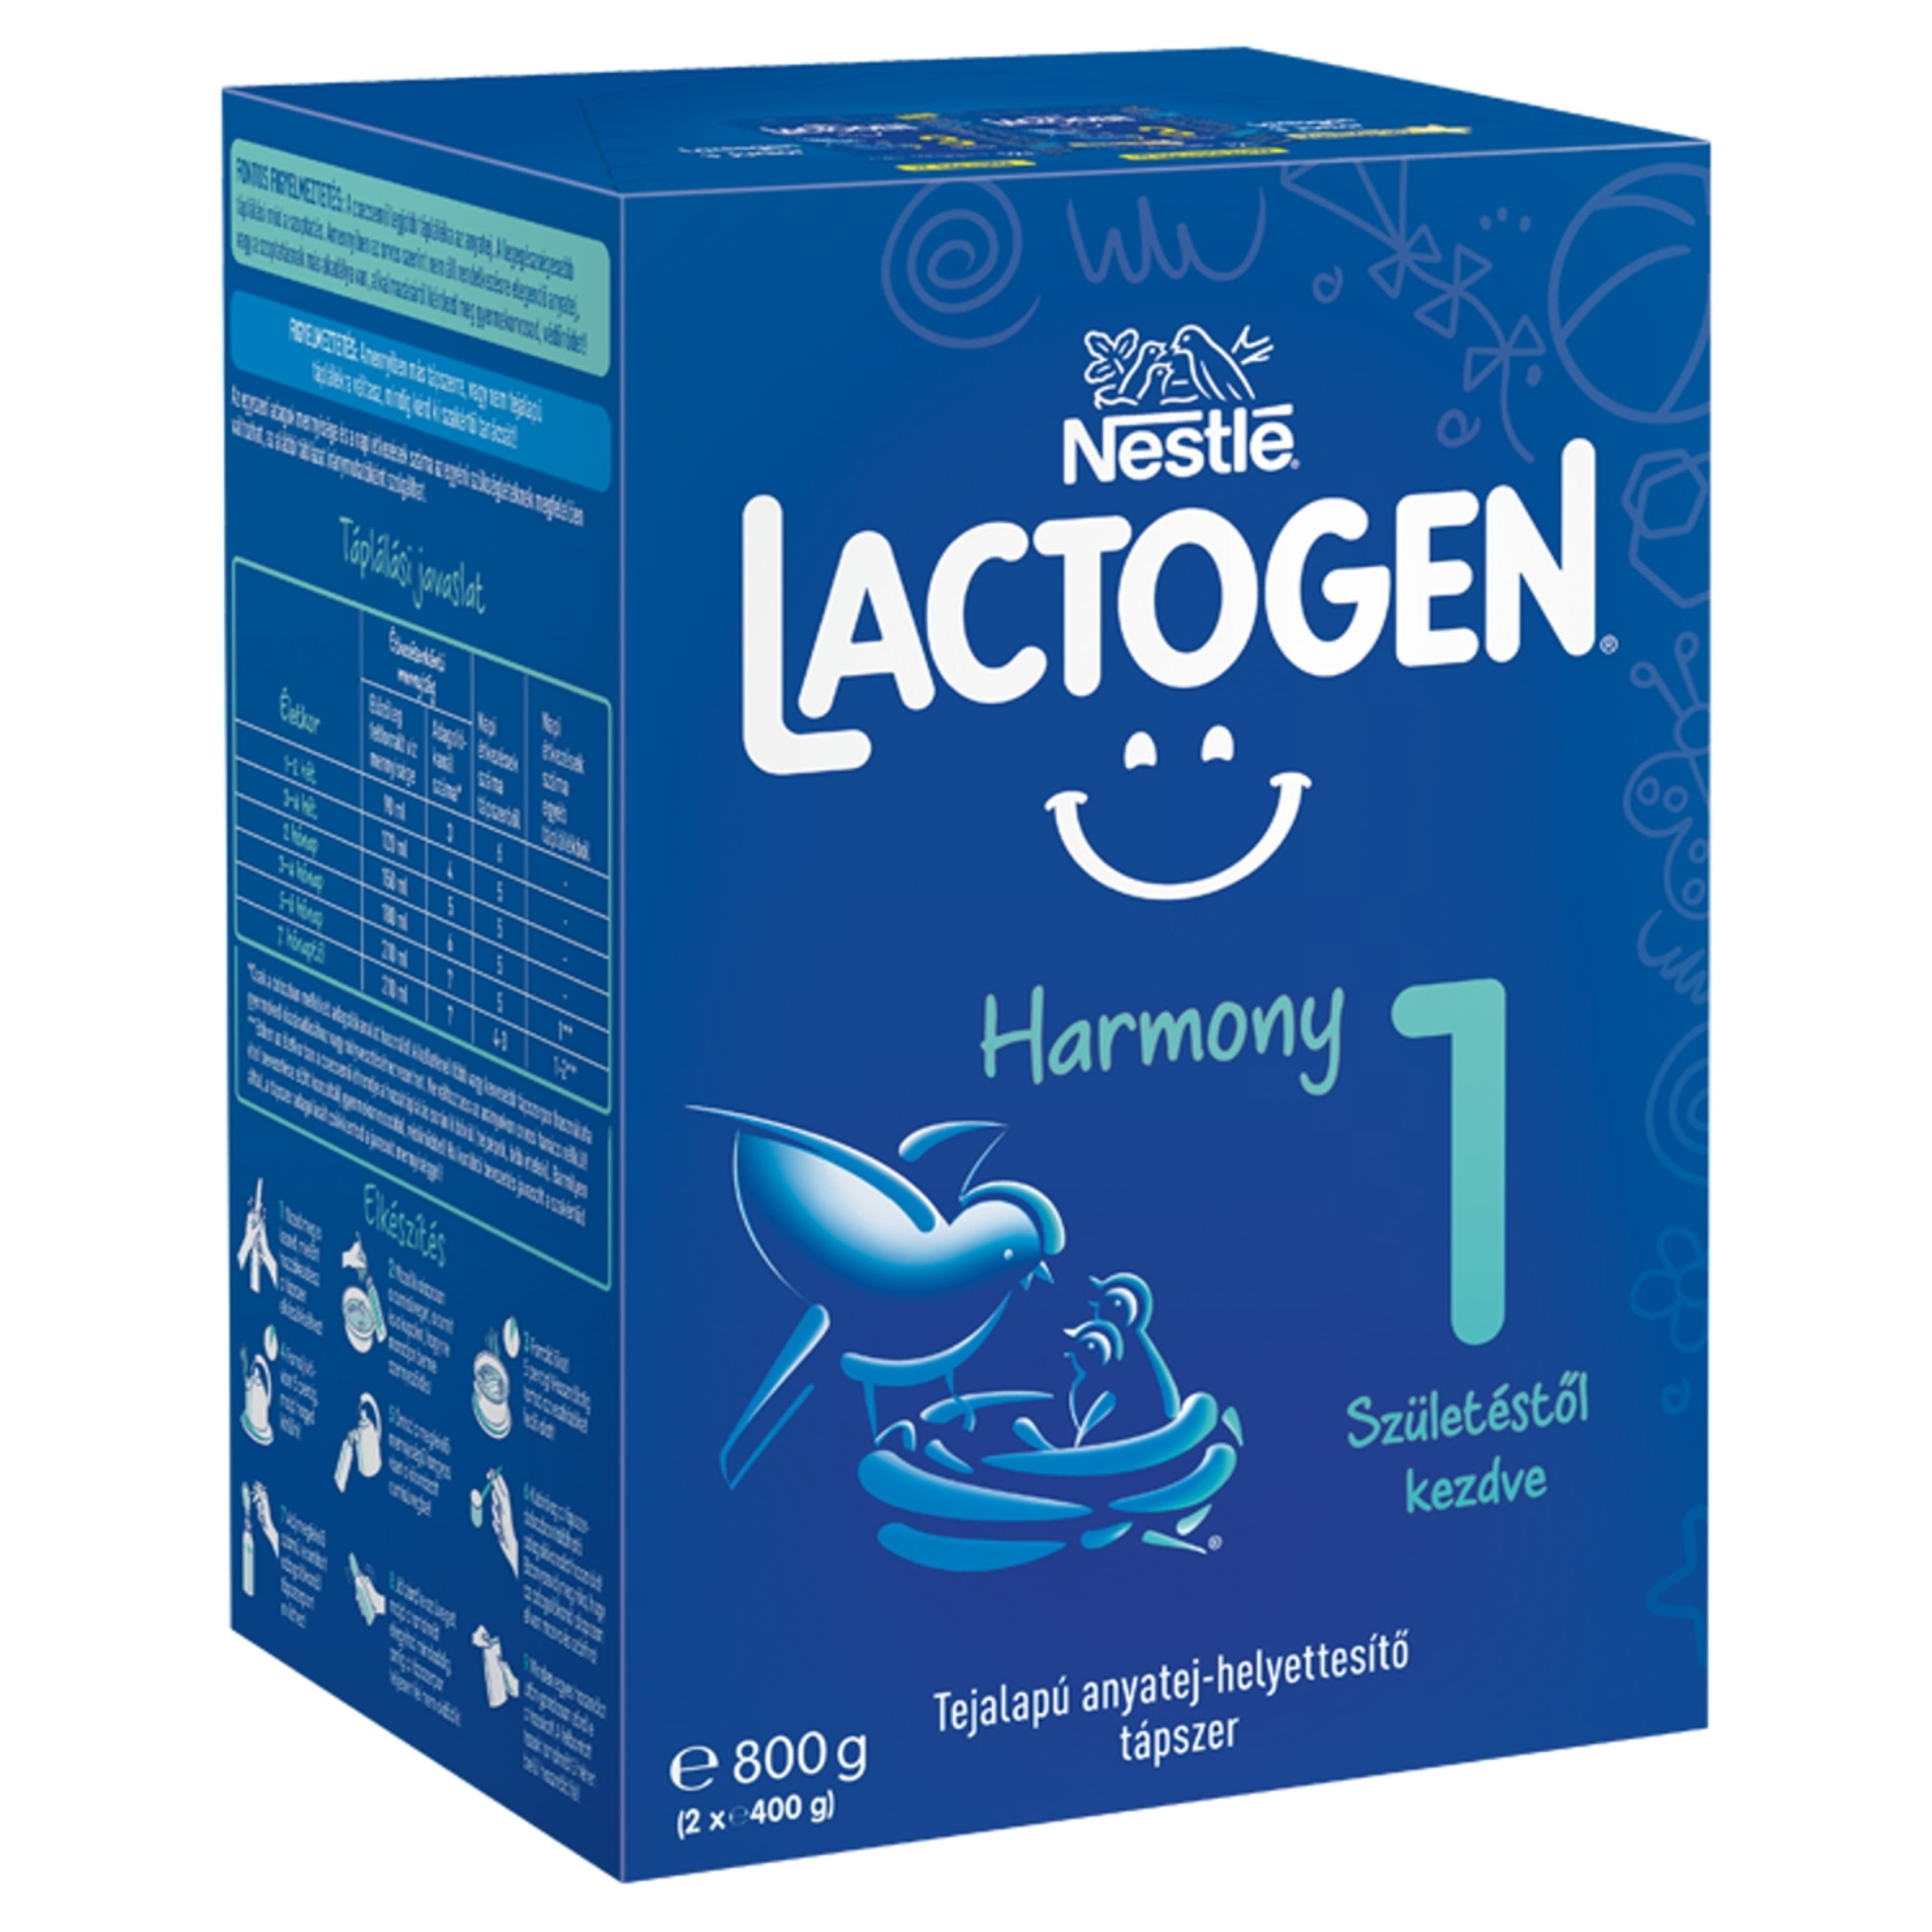 Lactogen Harmony 1 tejalapú anyatej-helyettesítő tápszer születéstől kezdve - 800 g-2